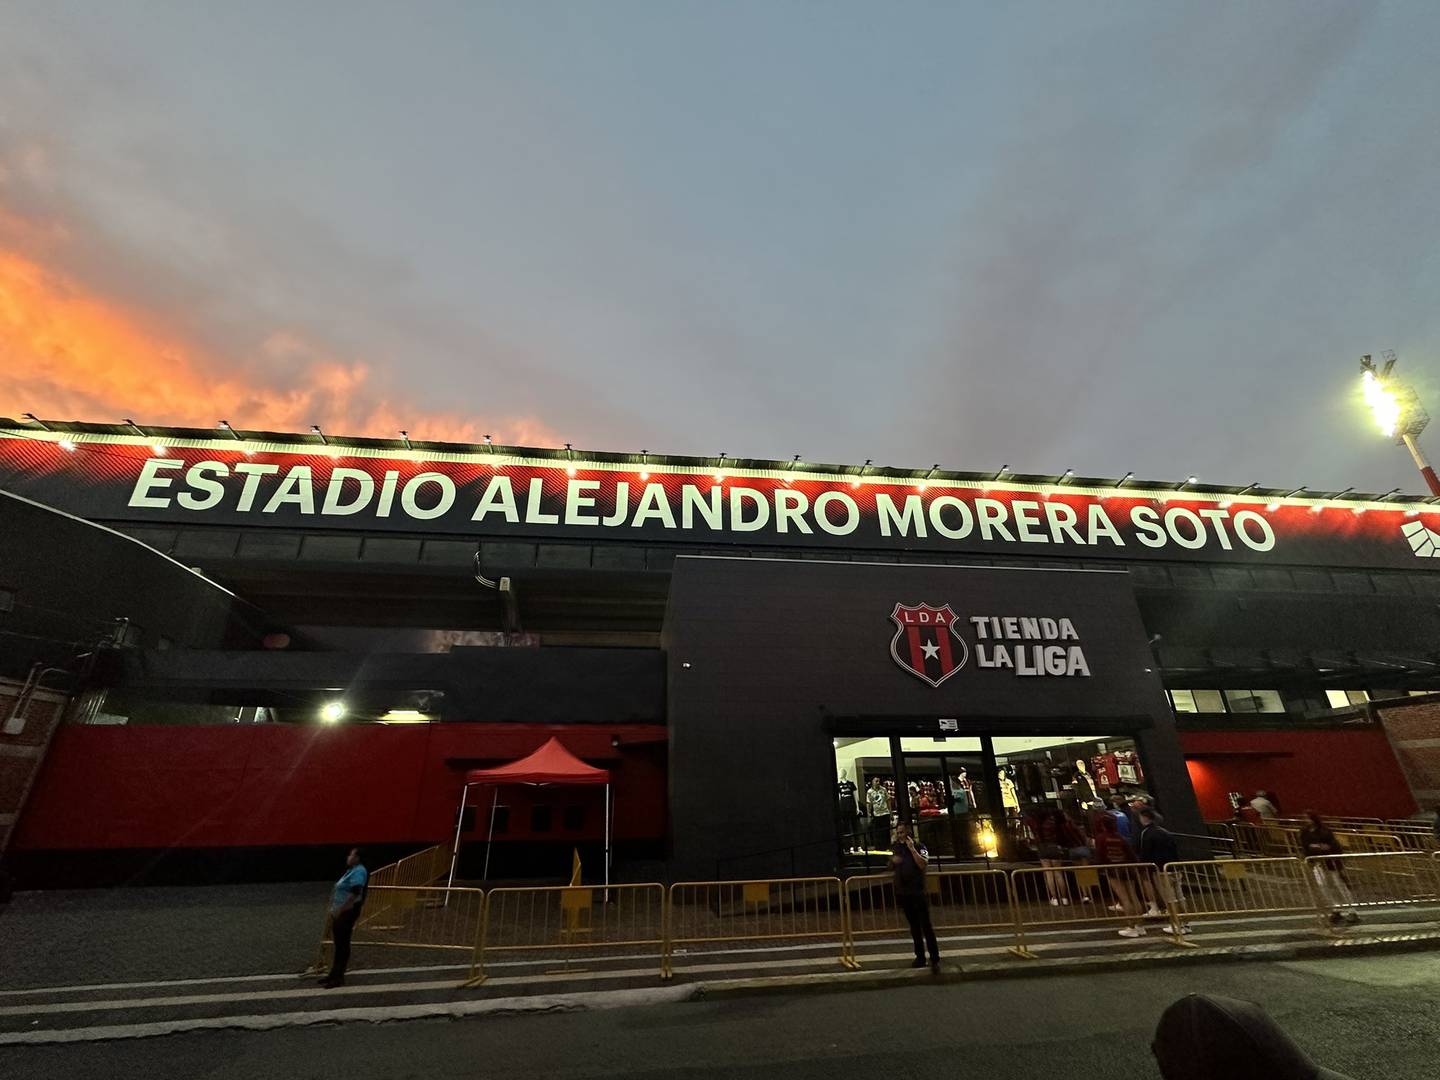 El estadio Morera Soto tiene otra cara desde este jueves. Foto: Twitter Federico Calderón